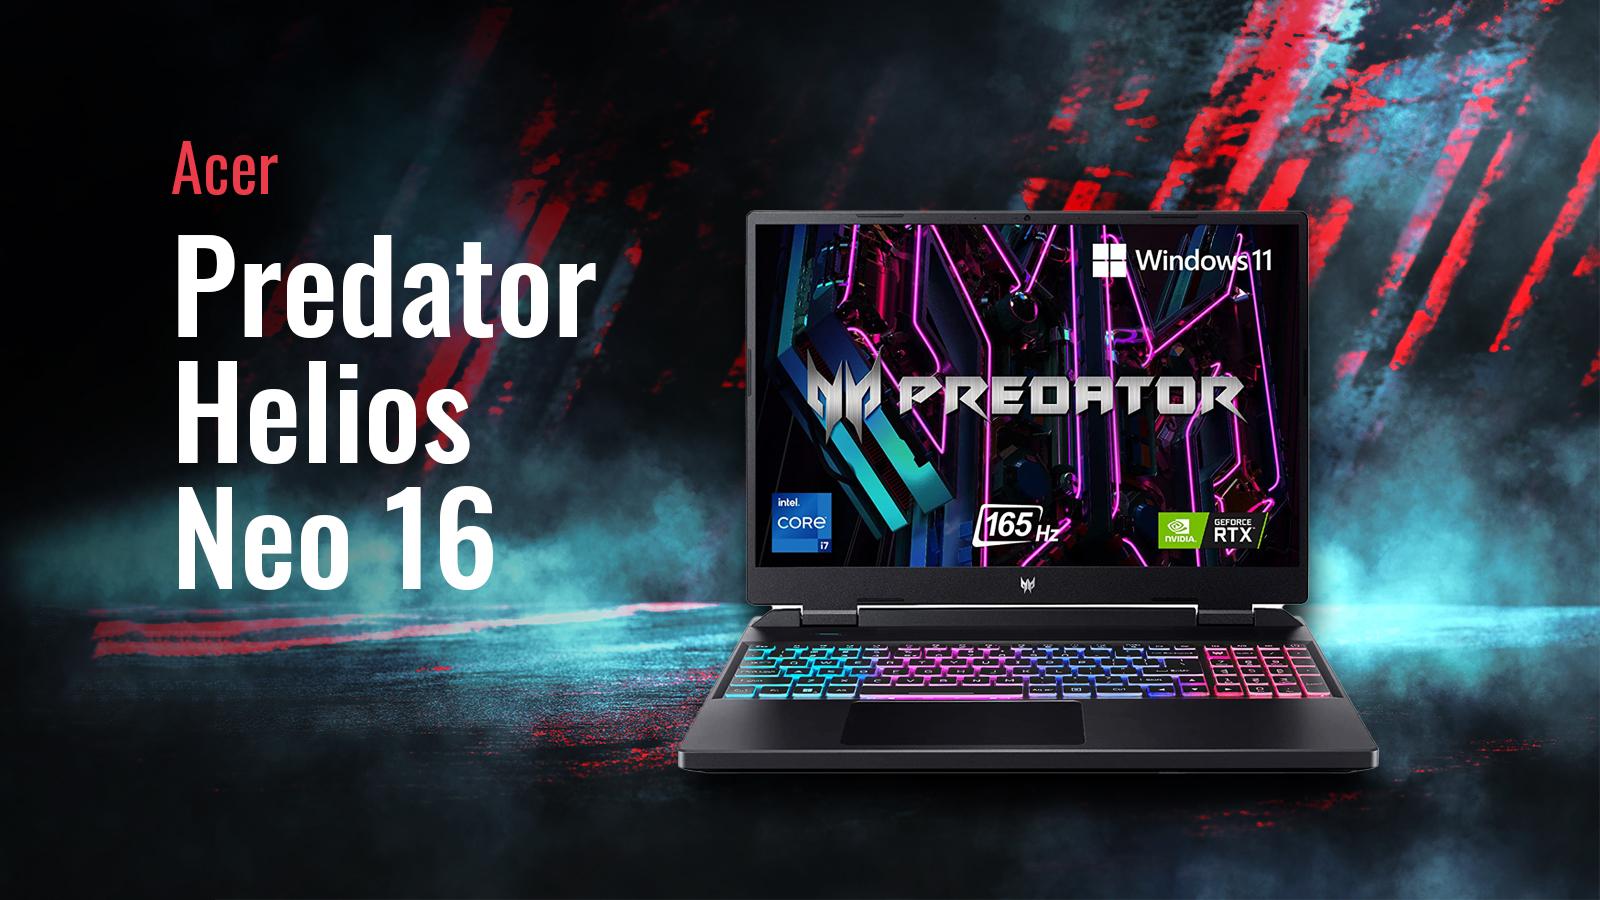 Acer Predator Helios Neo 16 review